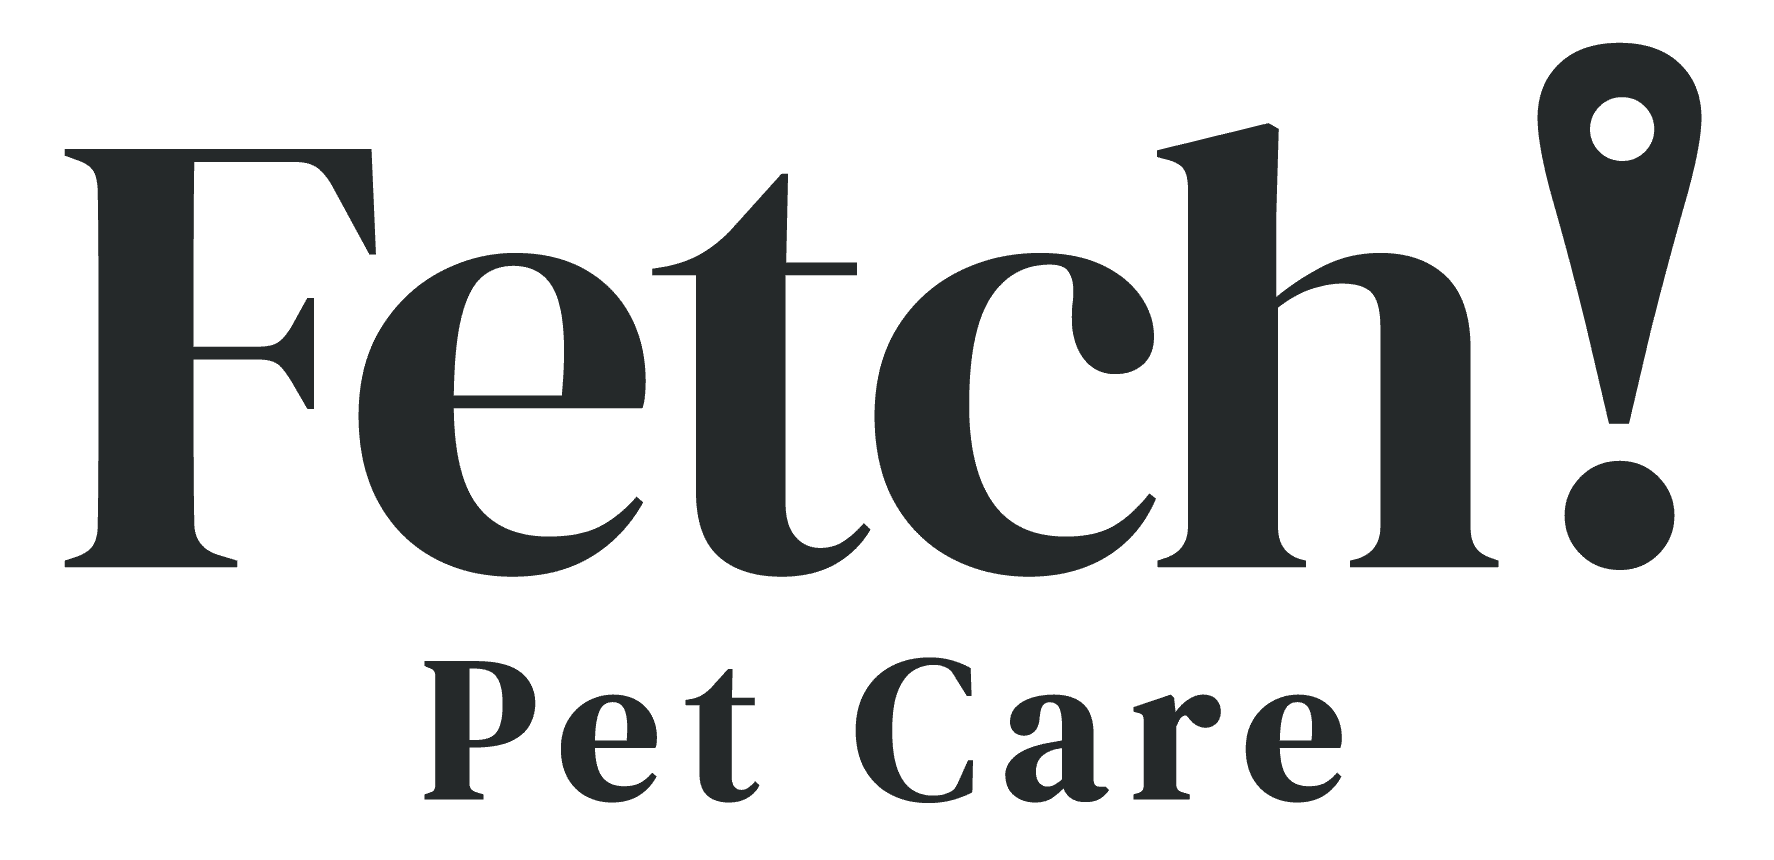 Fetch! Pet Care Franchise Logo